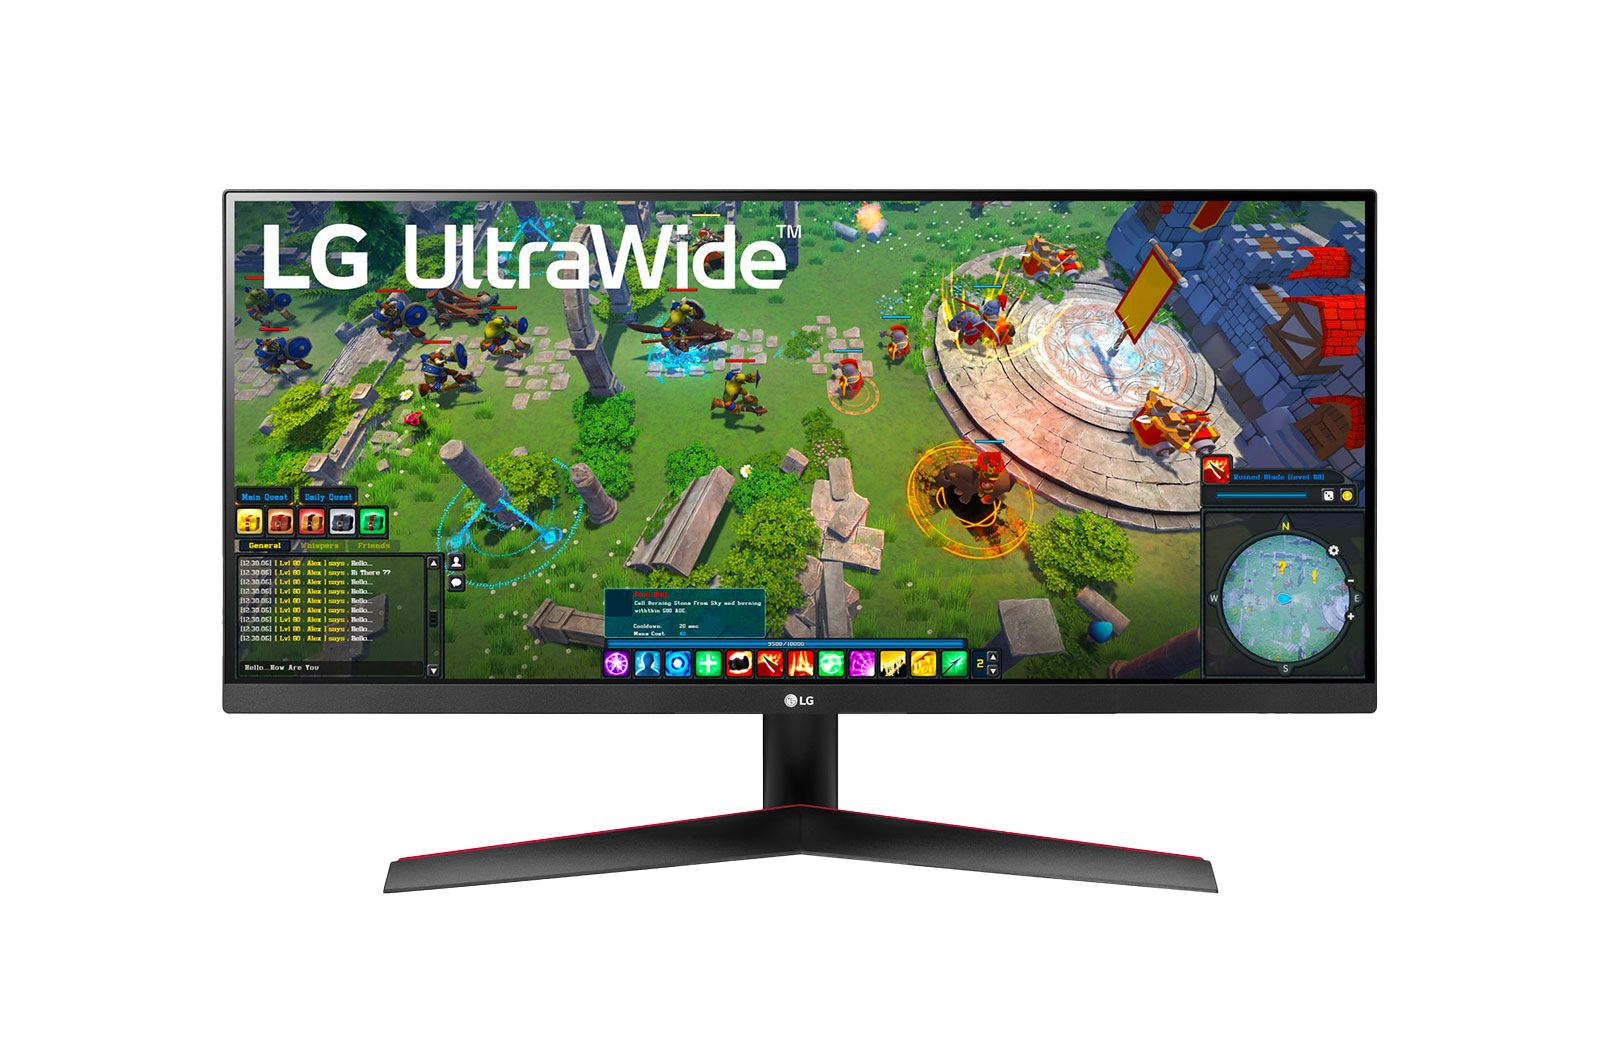 LG UltraWide Monitörlerle Mükemmel Görüntü Keyfi